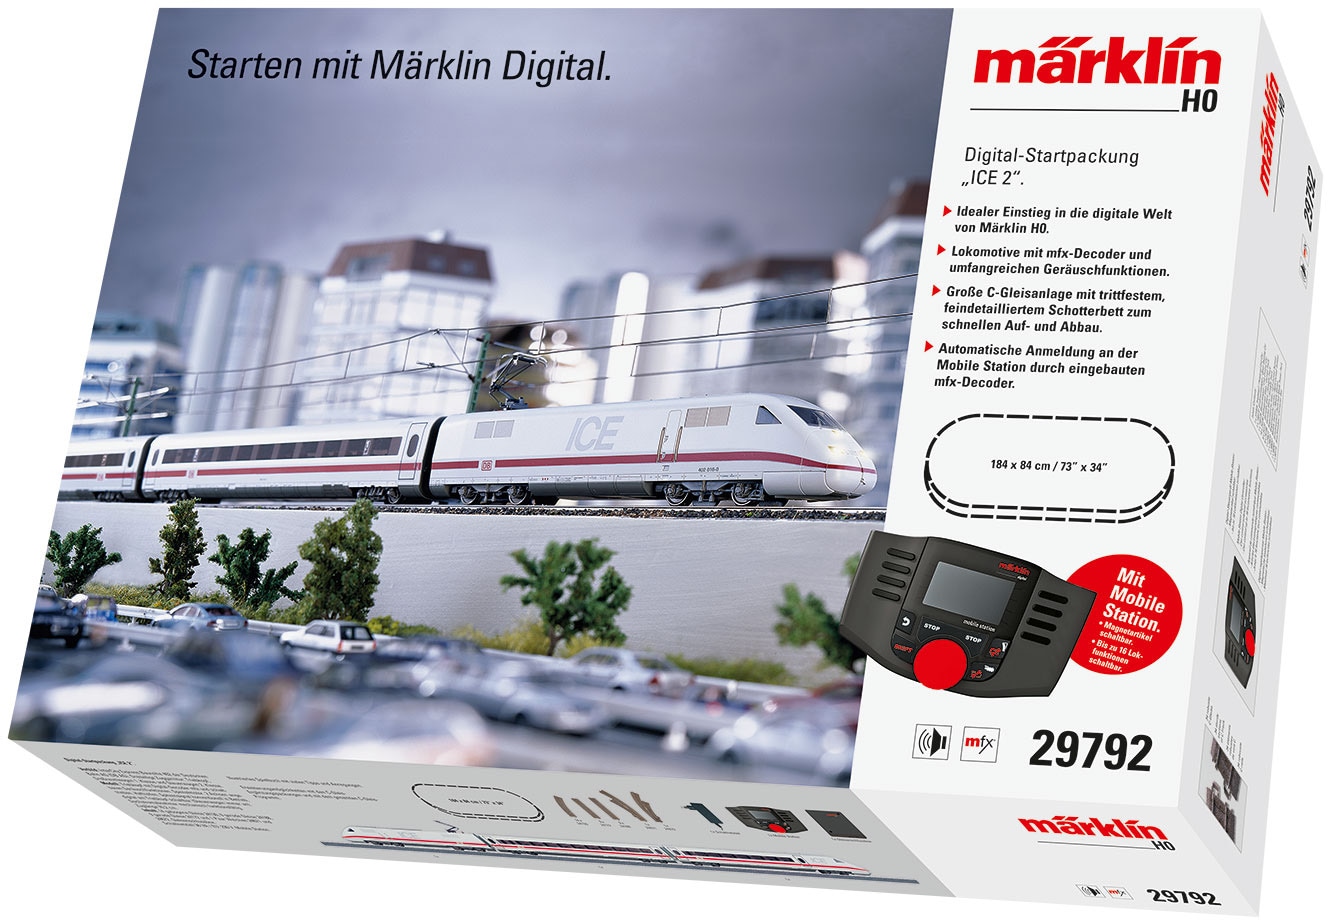 Märklin Modelleisenbahn-Set »Märklin Digital - Startpackung ICE 2, Wechselstrom - 29792«